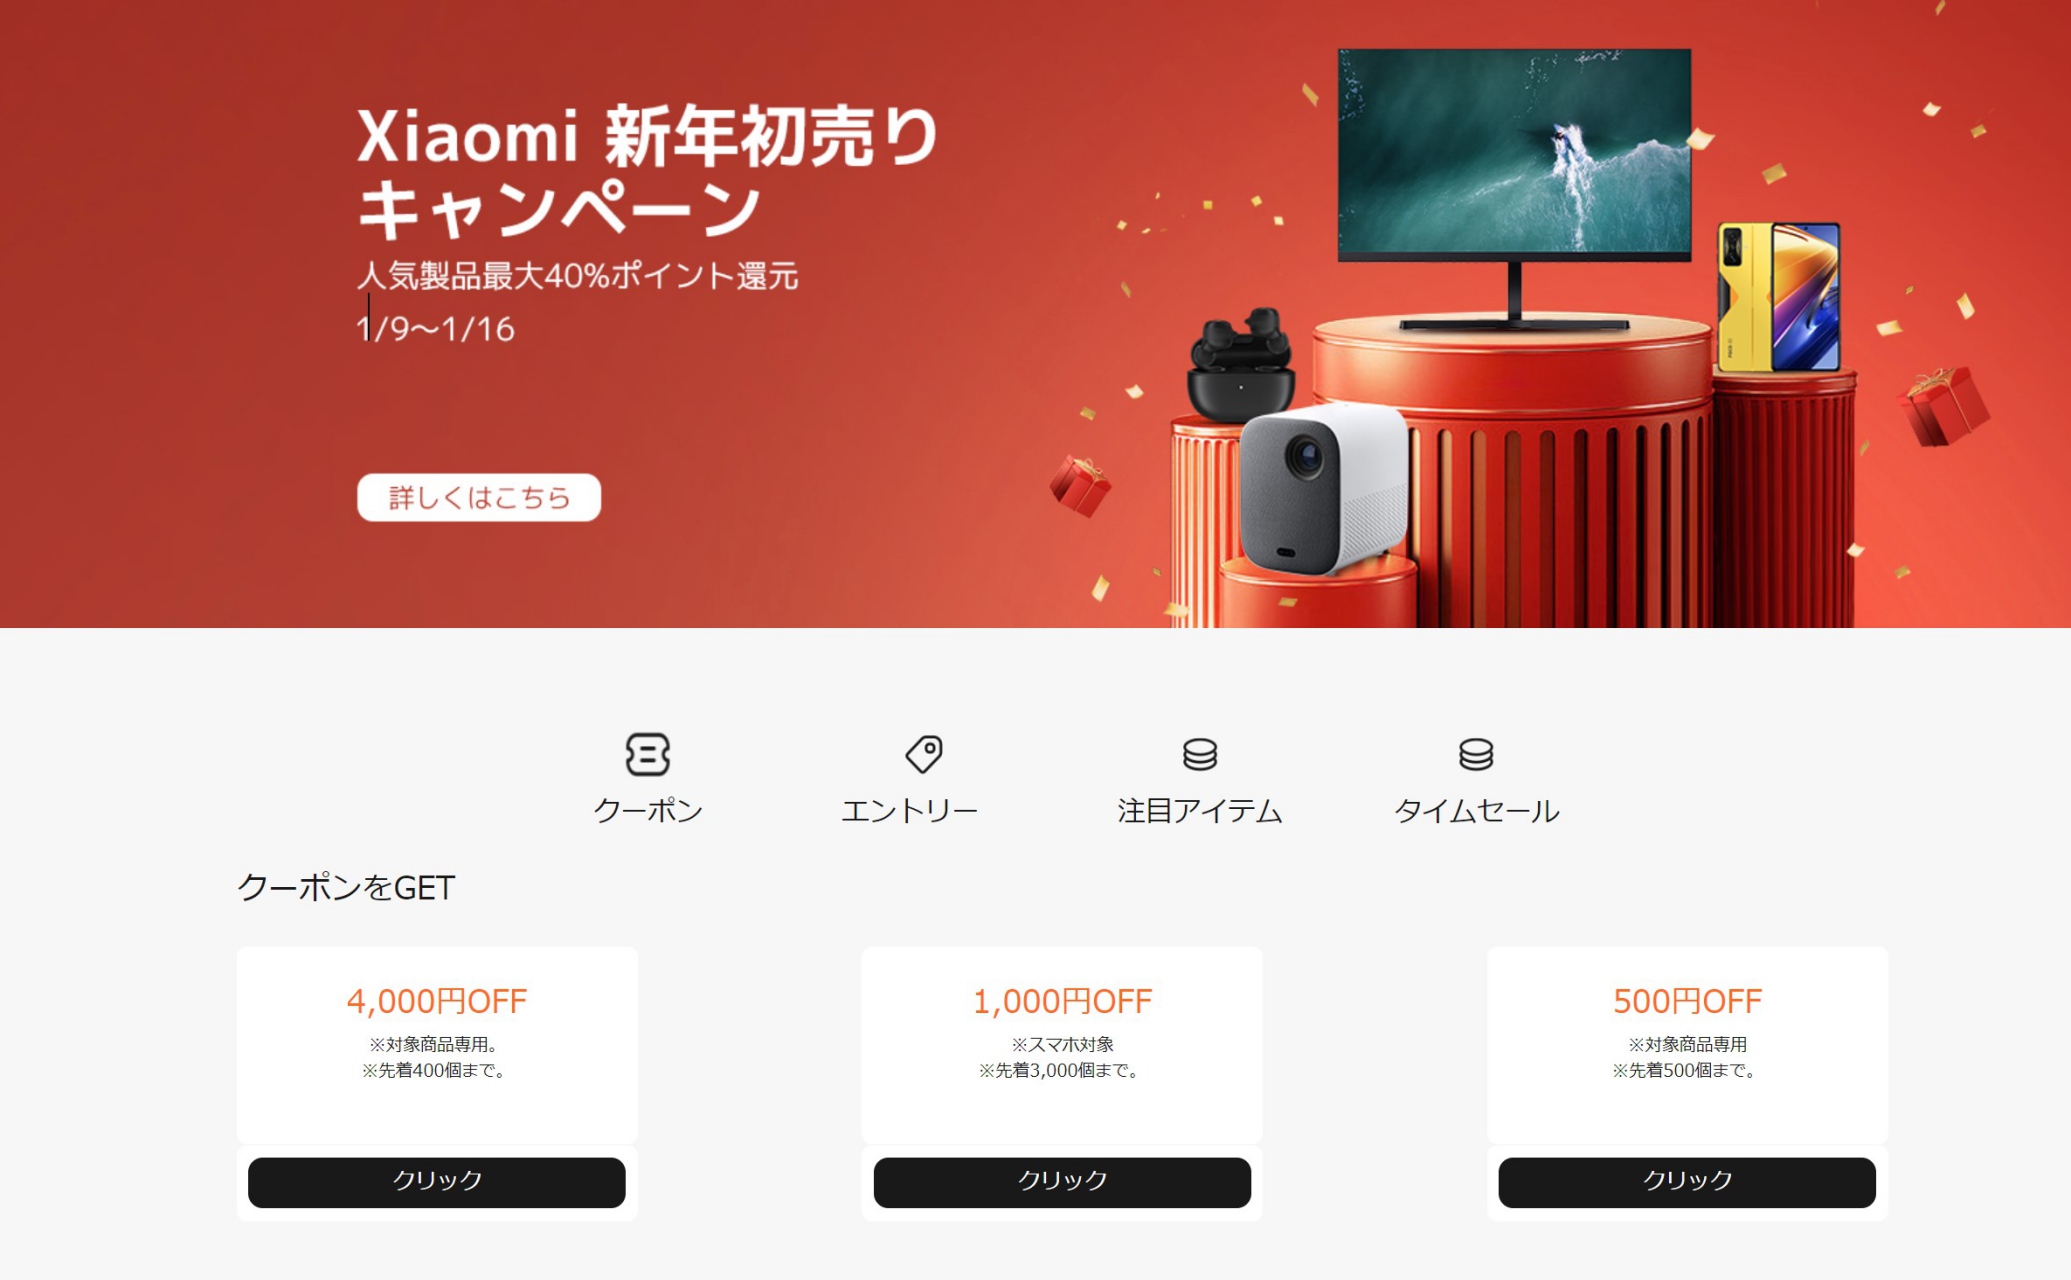 Xiaomi 新年初売りキャンペーン